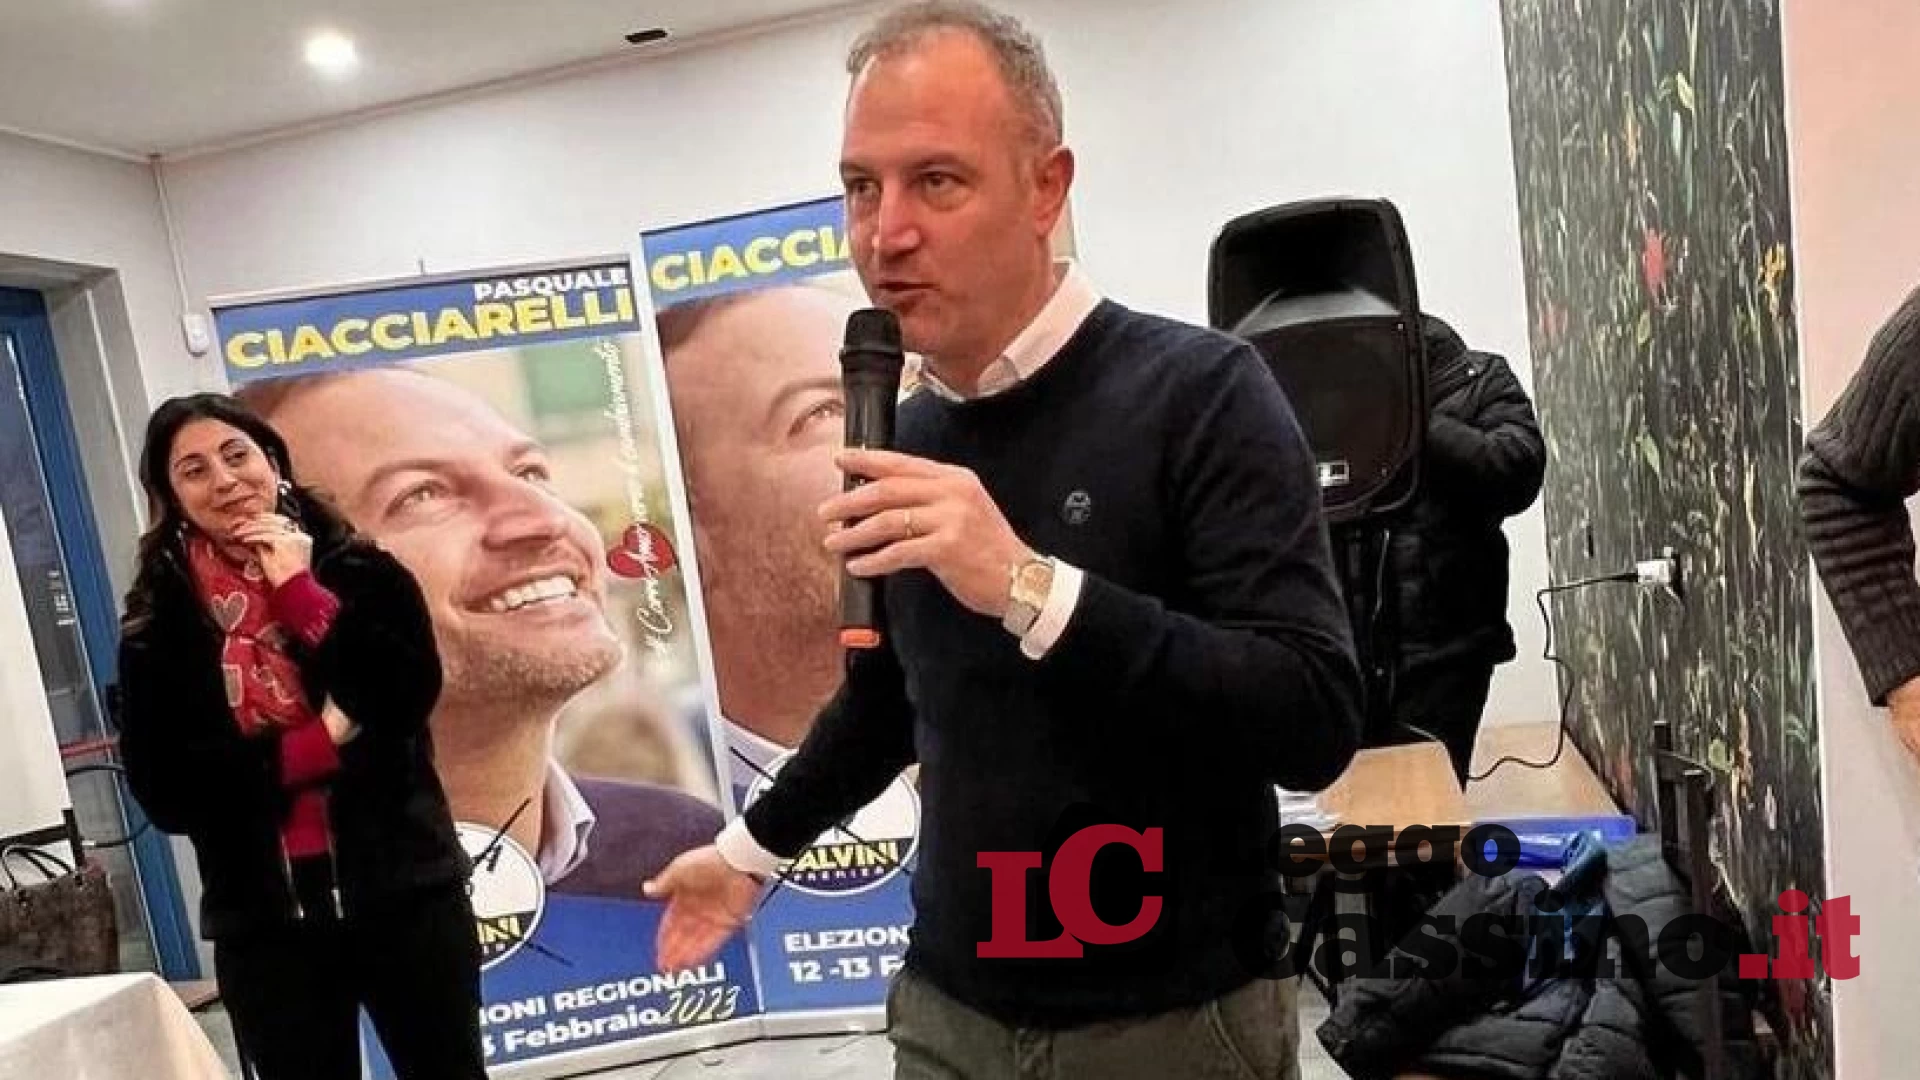 "Straordinario risultato di Ciacciarelli a Cassino: il più votato”